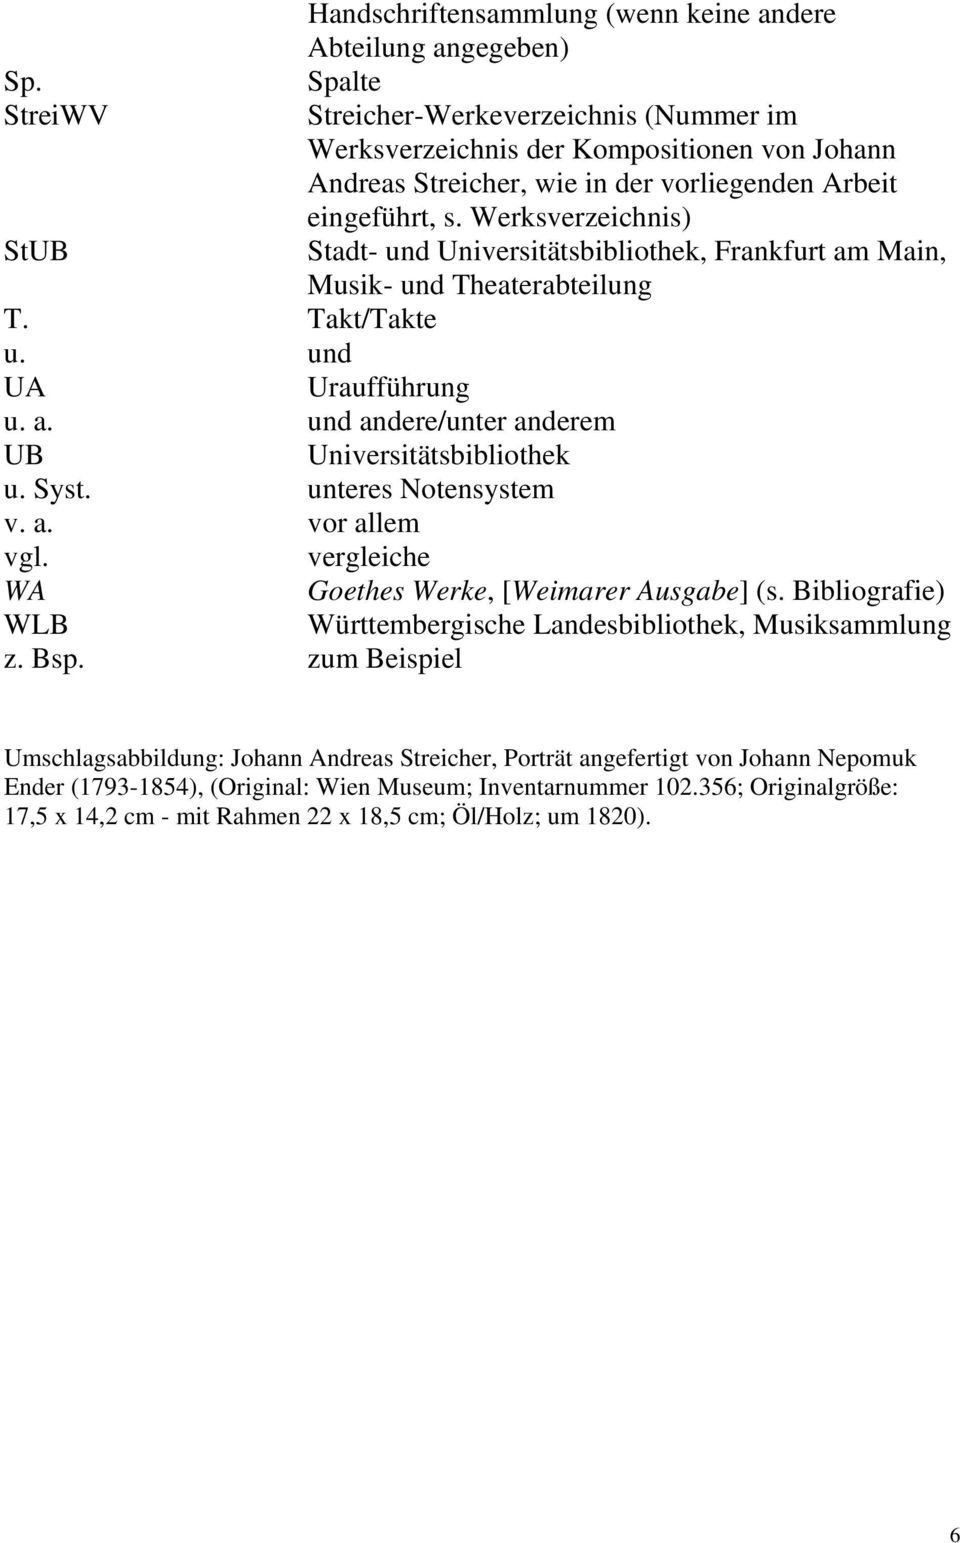 Werksverzeichnis) StUB Stadt- und Universitätsbibliothek, Frankfurt am Main, Musik- und Theaterabteilung T. Takt/Takte u. und UA Uraufführung u. a. und andere/unter anderem UB Universitätsbibliothek u.